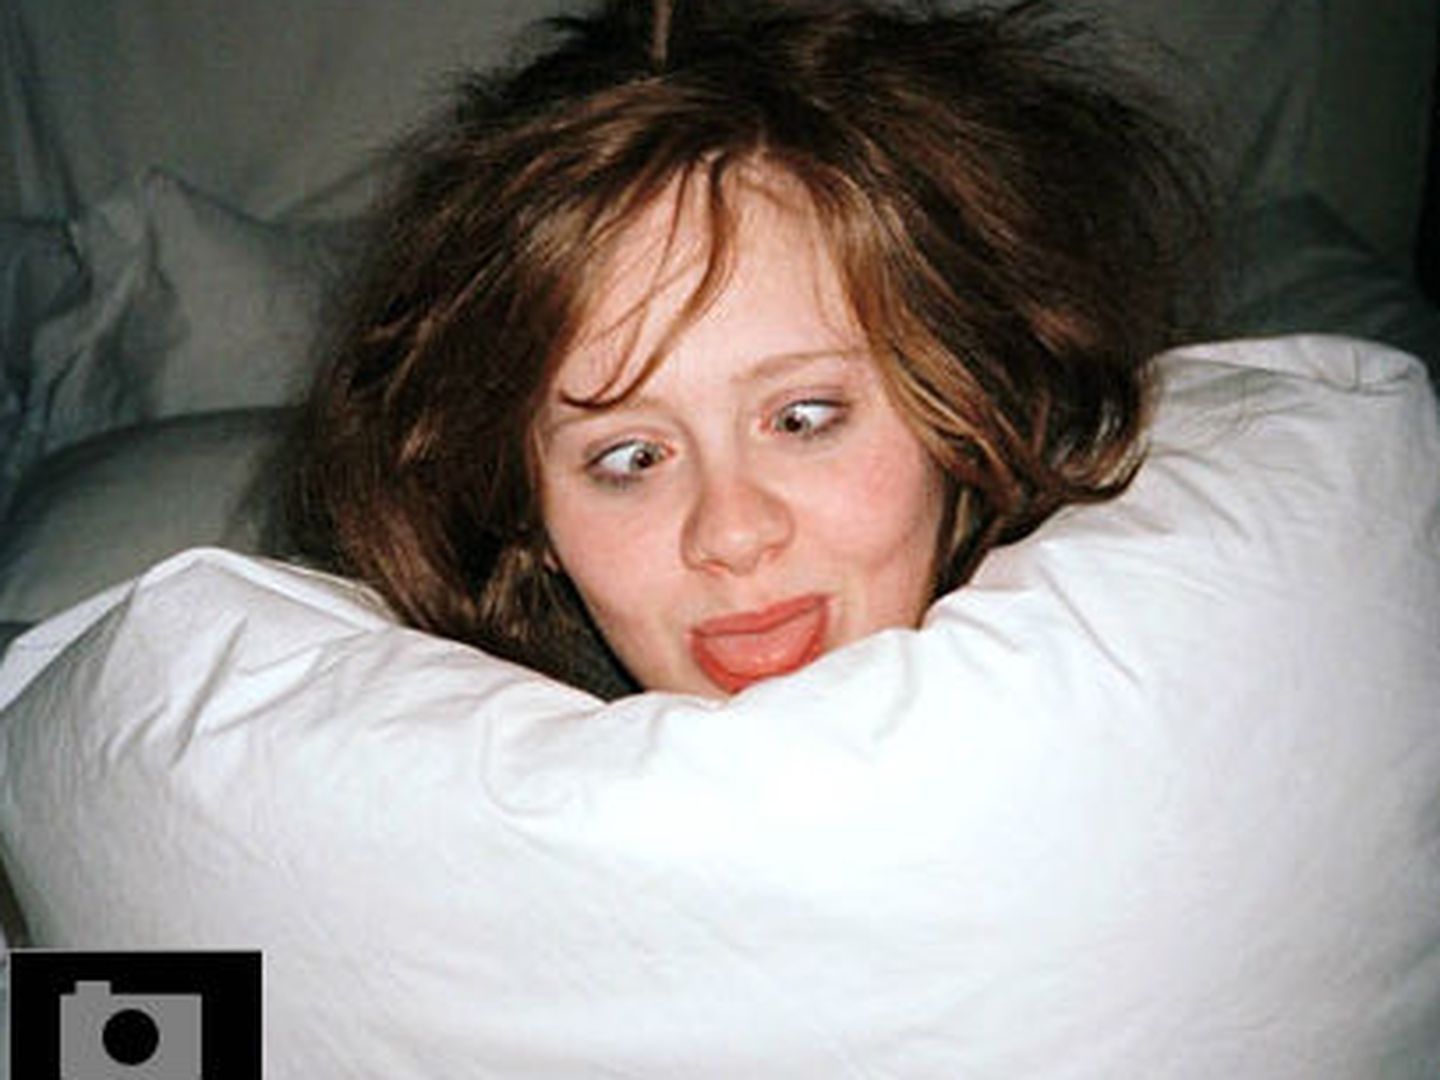 Galería: las fotos de la venganza del exnovio de Adele